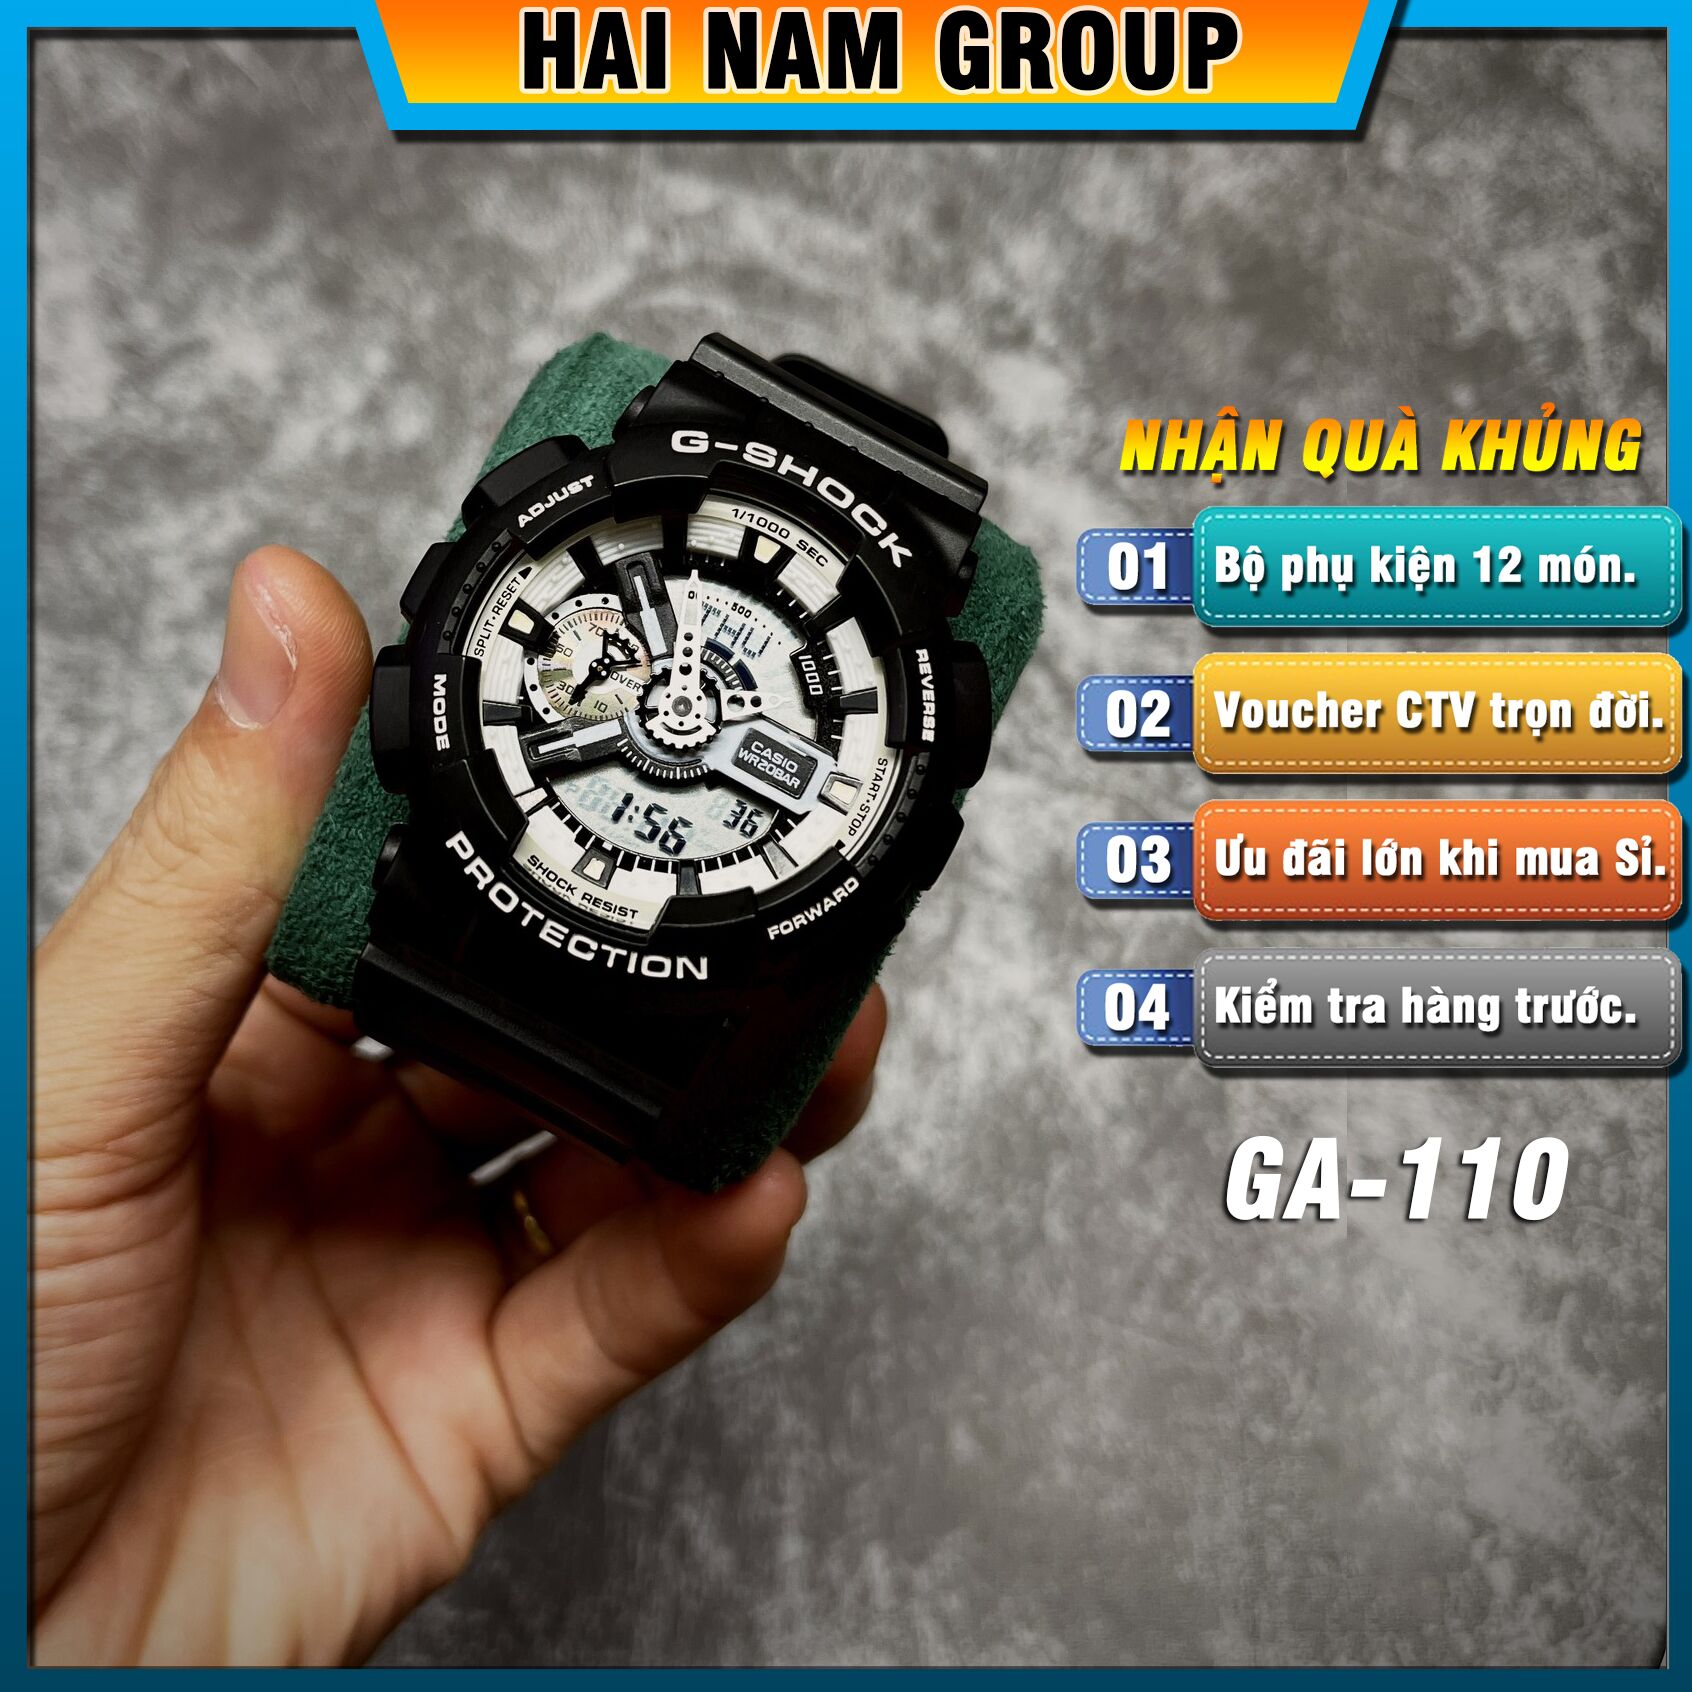 Đồng hồ nam nữ G-SHOCK GA-110BW-1A REP 1:1 Màu Đen Mặt Trắng tại Hải Nam Group 1